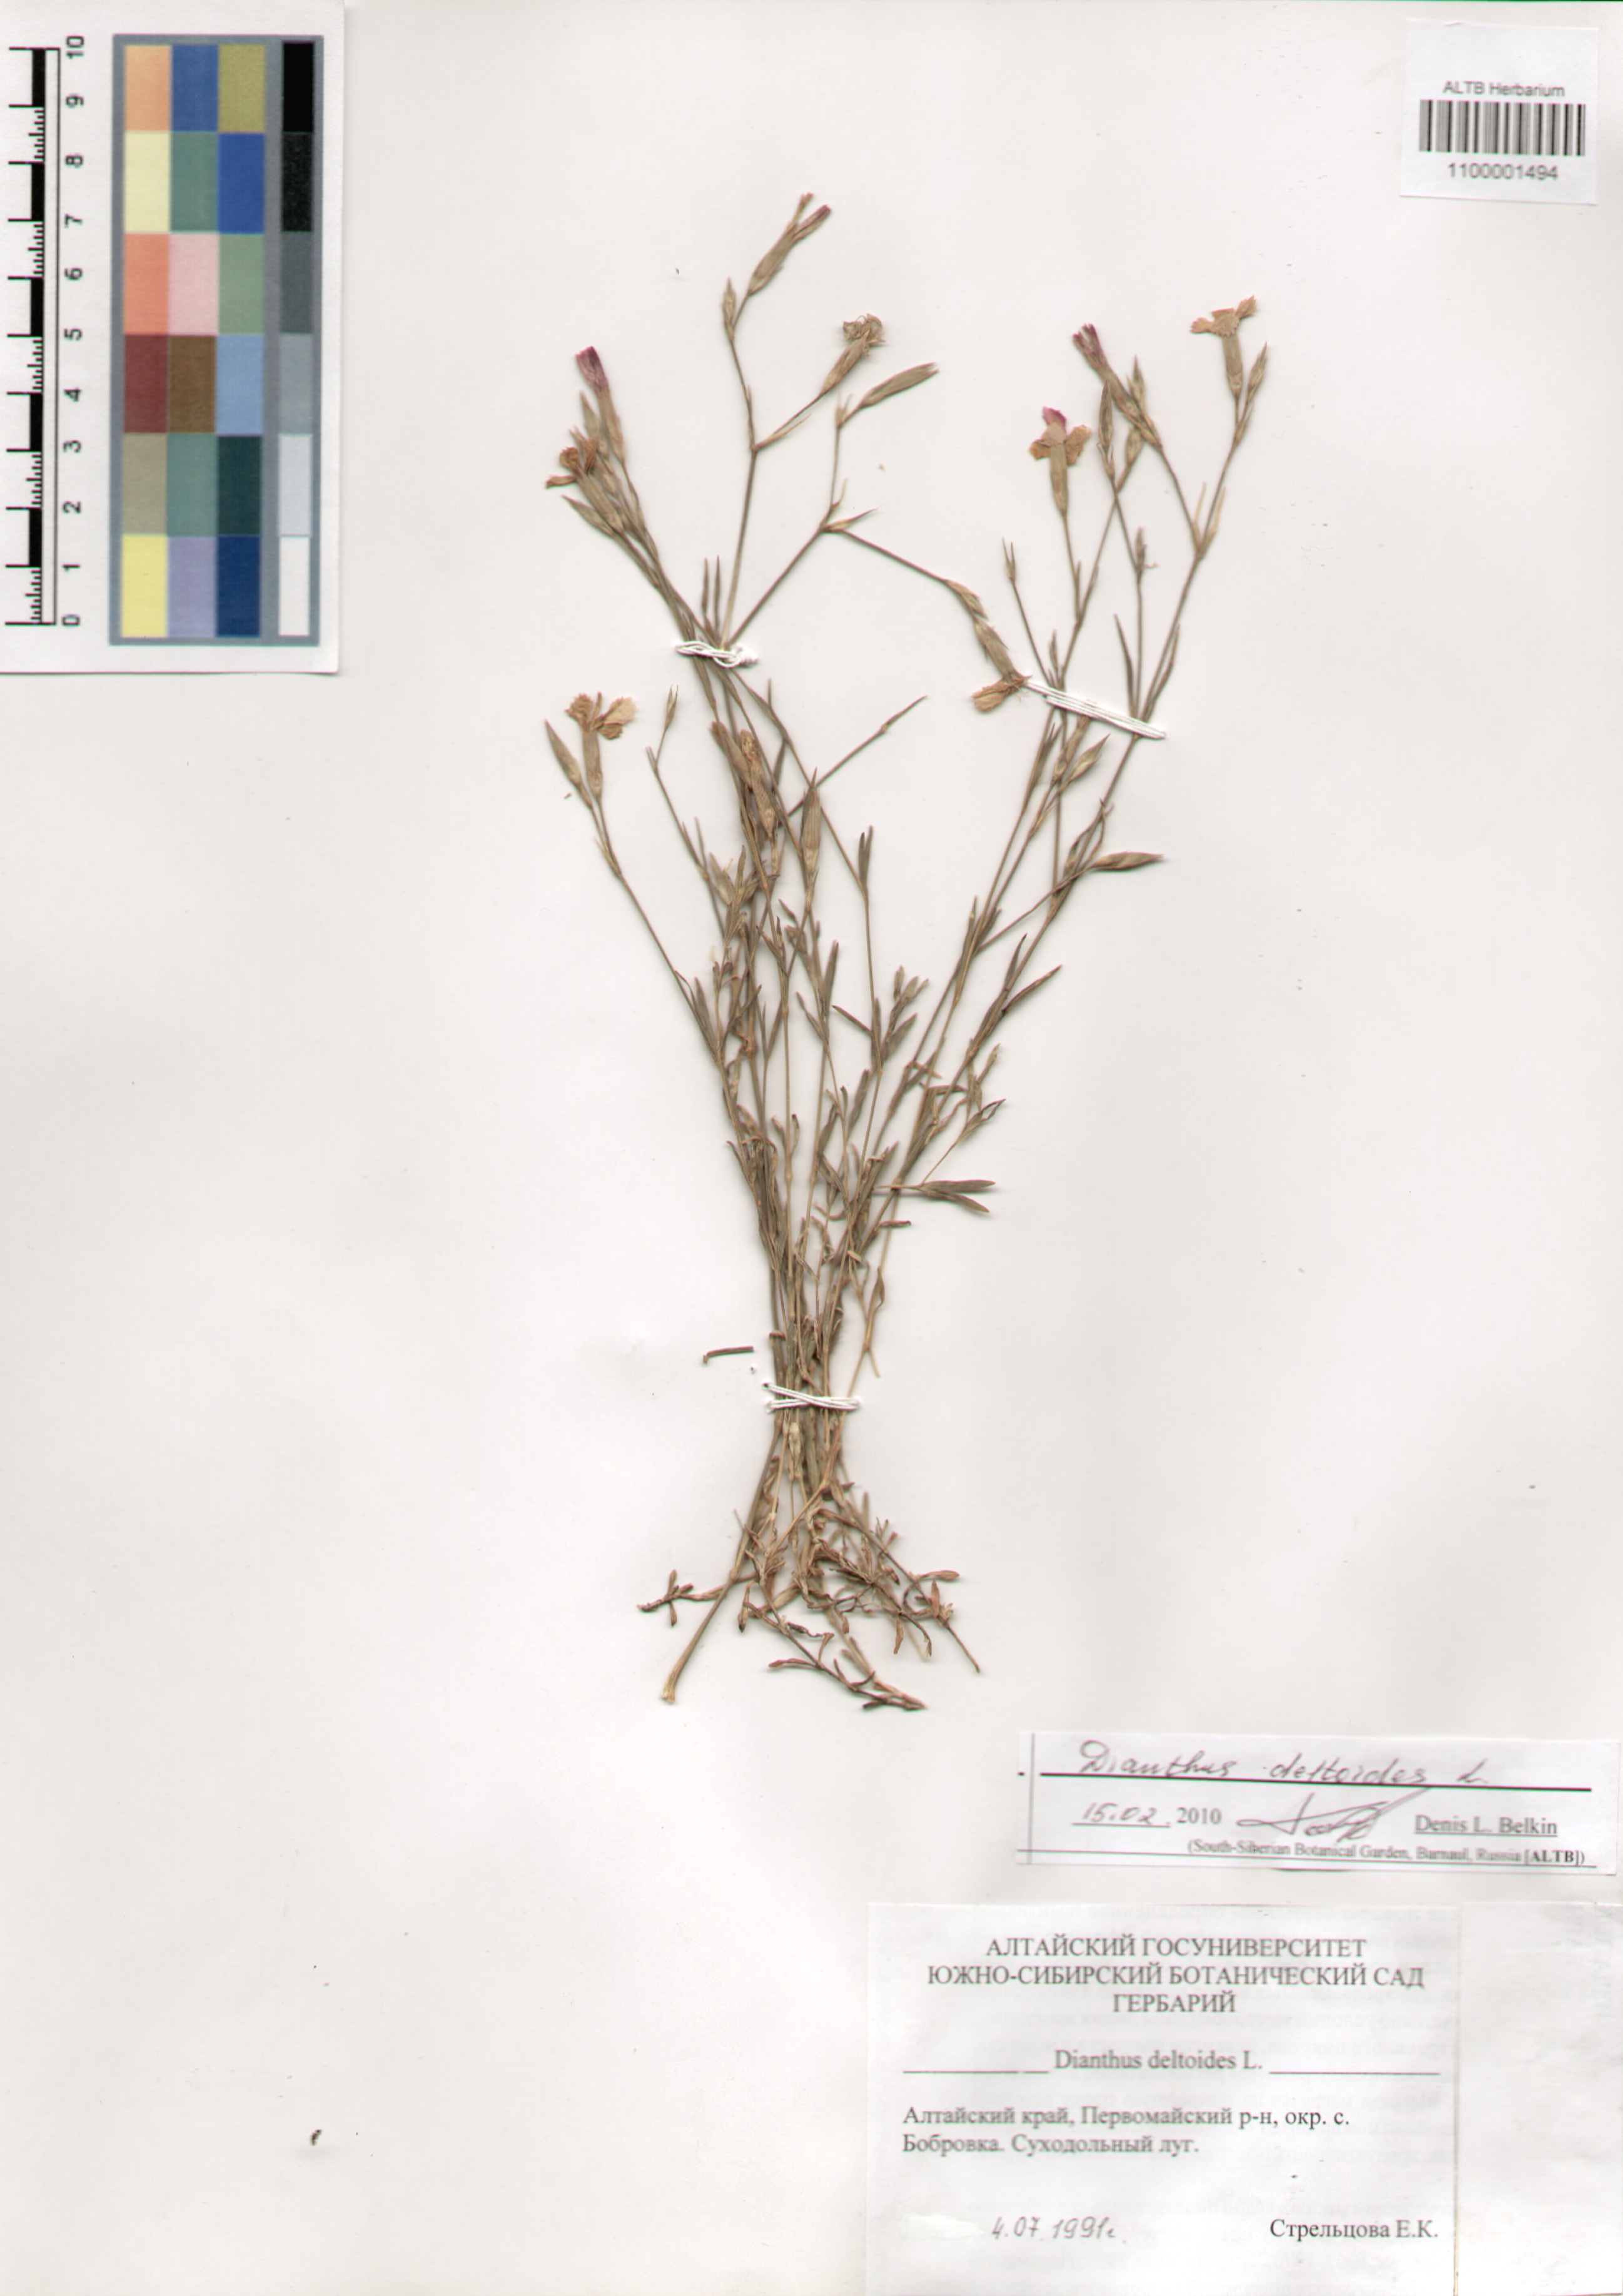 Caryophyllaceae,Dianthus deltoides L.